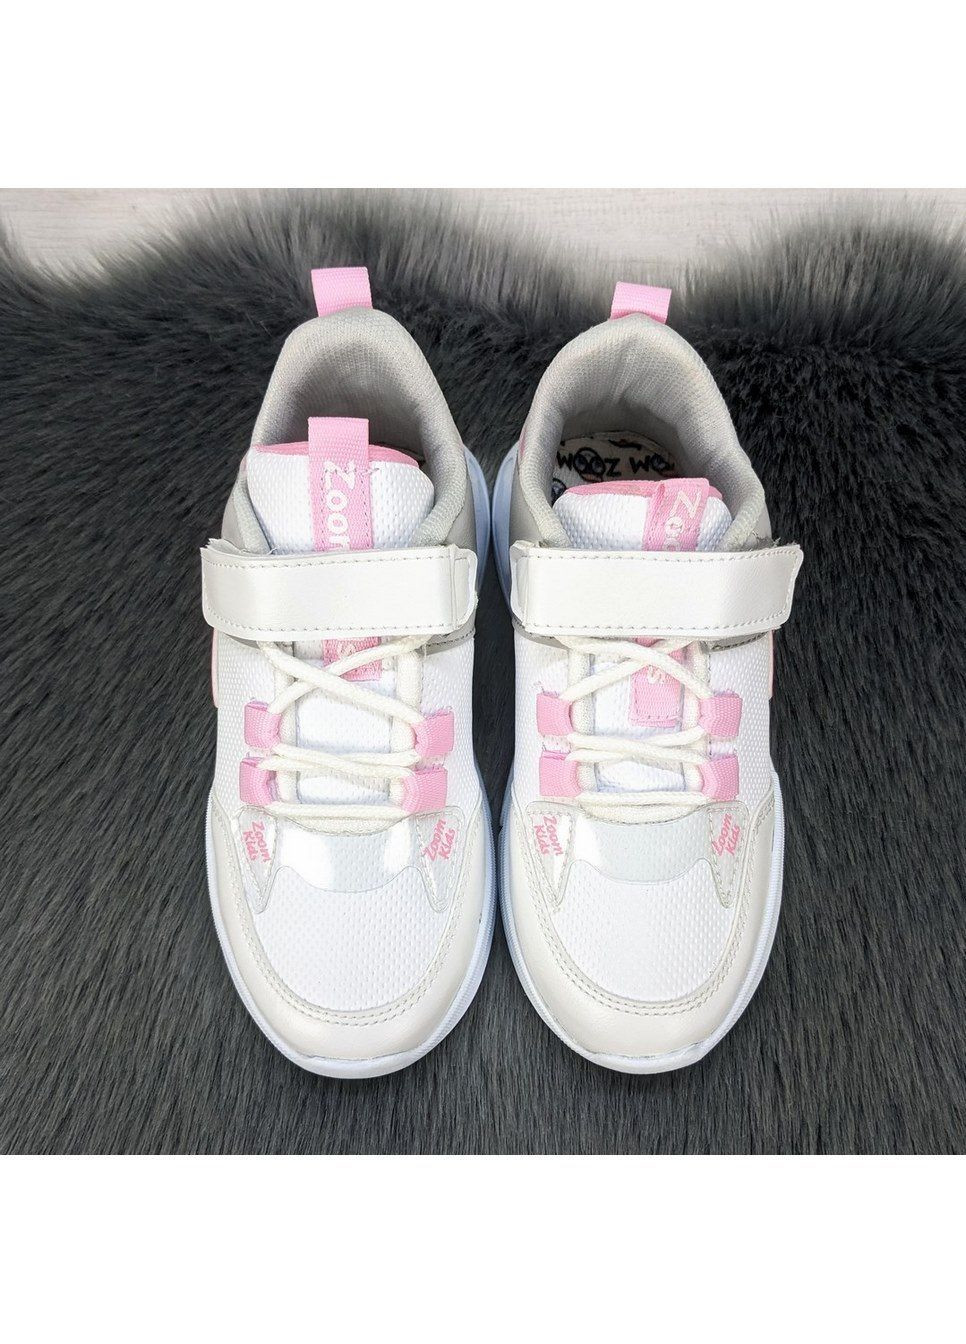 Білі осінні кросівки дитячі для дівчинки Zoom